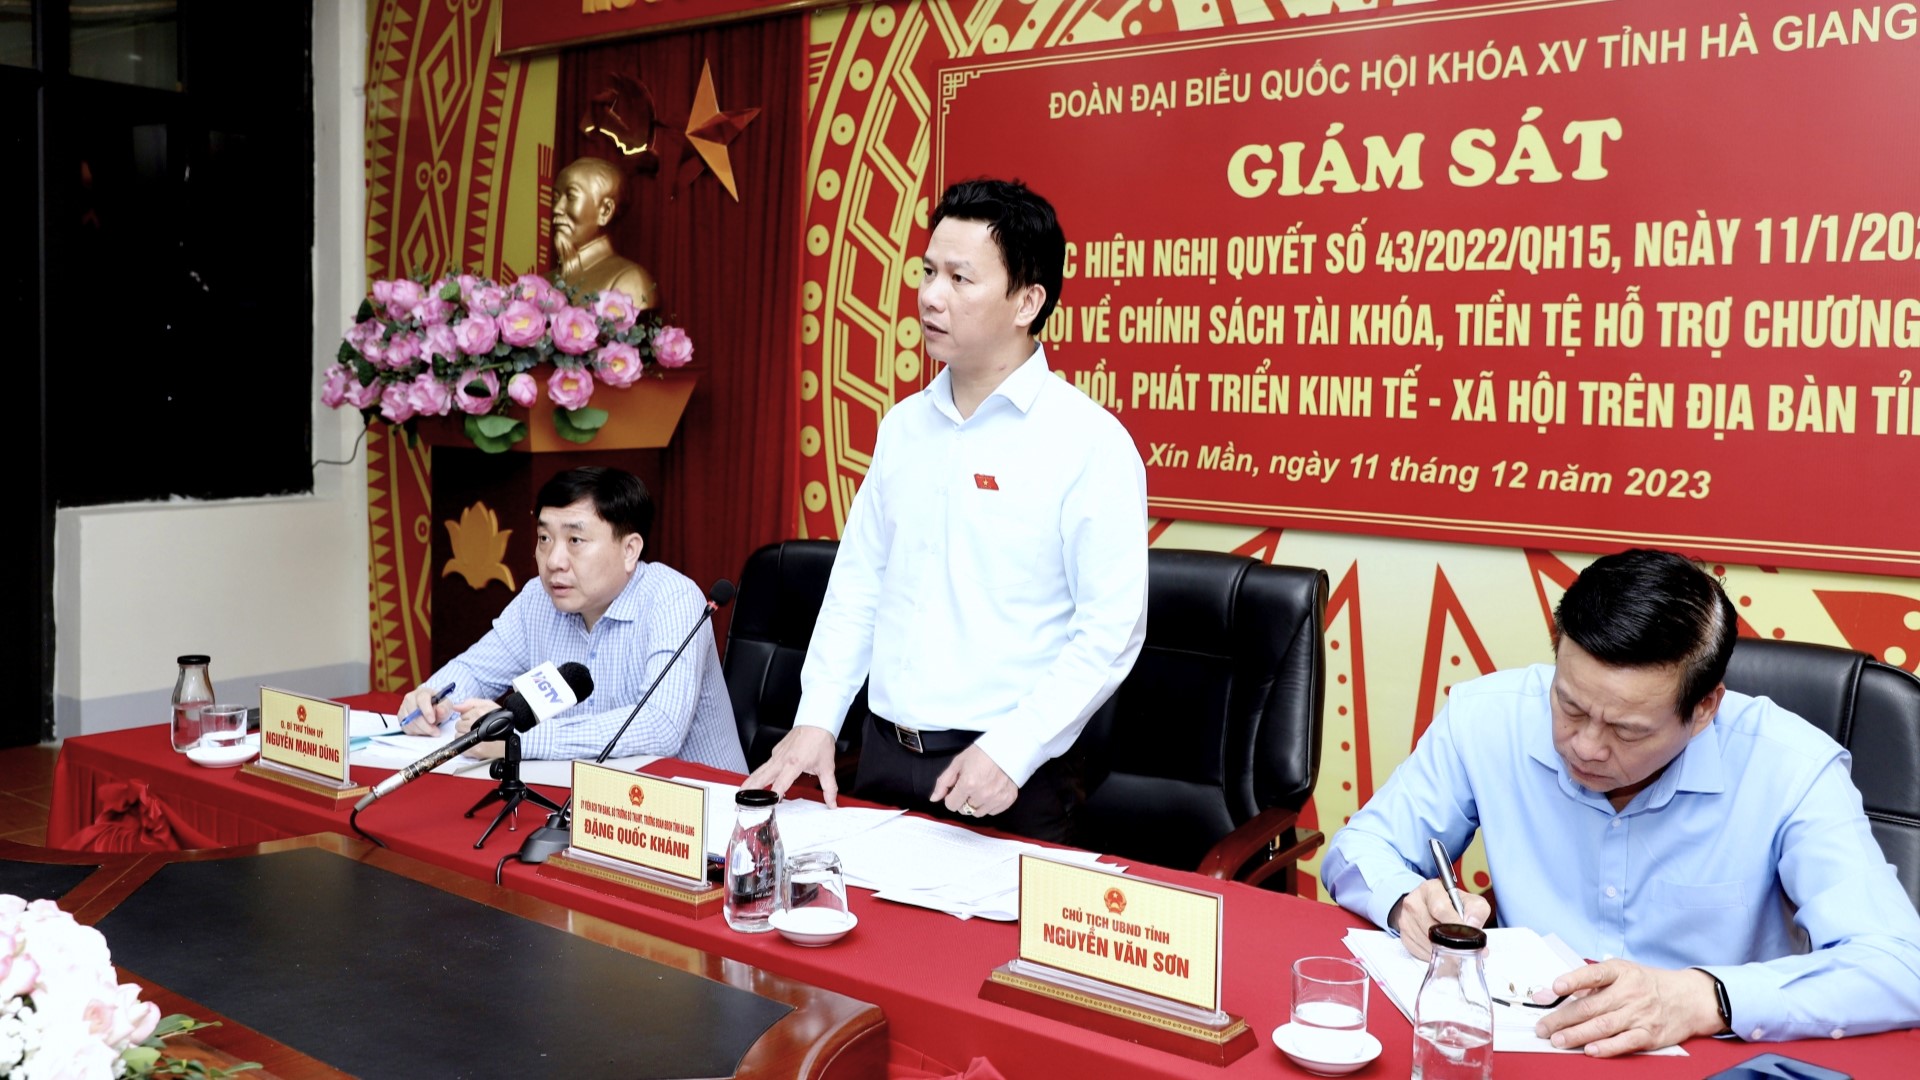 Đoàn ĐBQH khóa XV đơn vị tỉnh Hà Giang giám sát việc thực hiện Nghị quyết số 43 trên địa bàn tỉnh